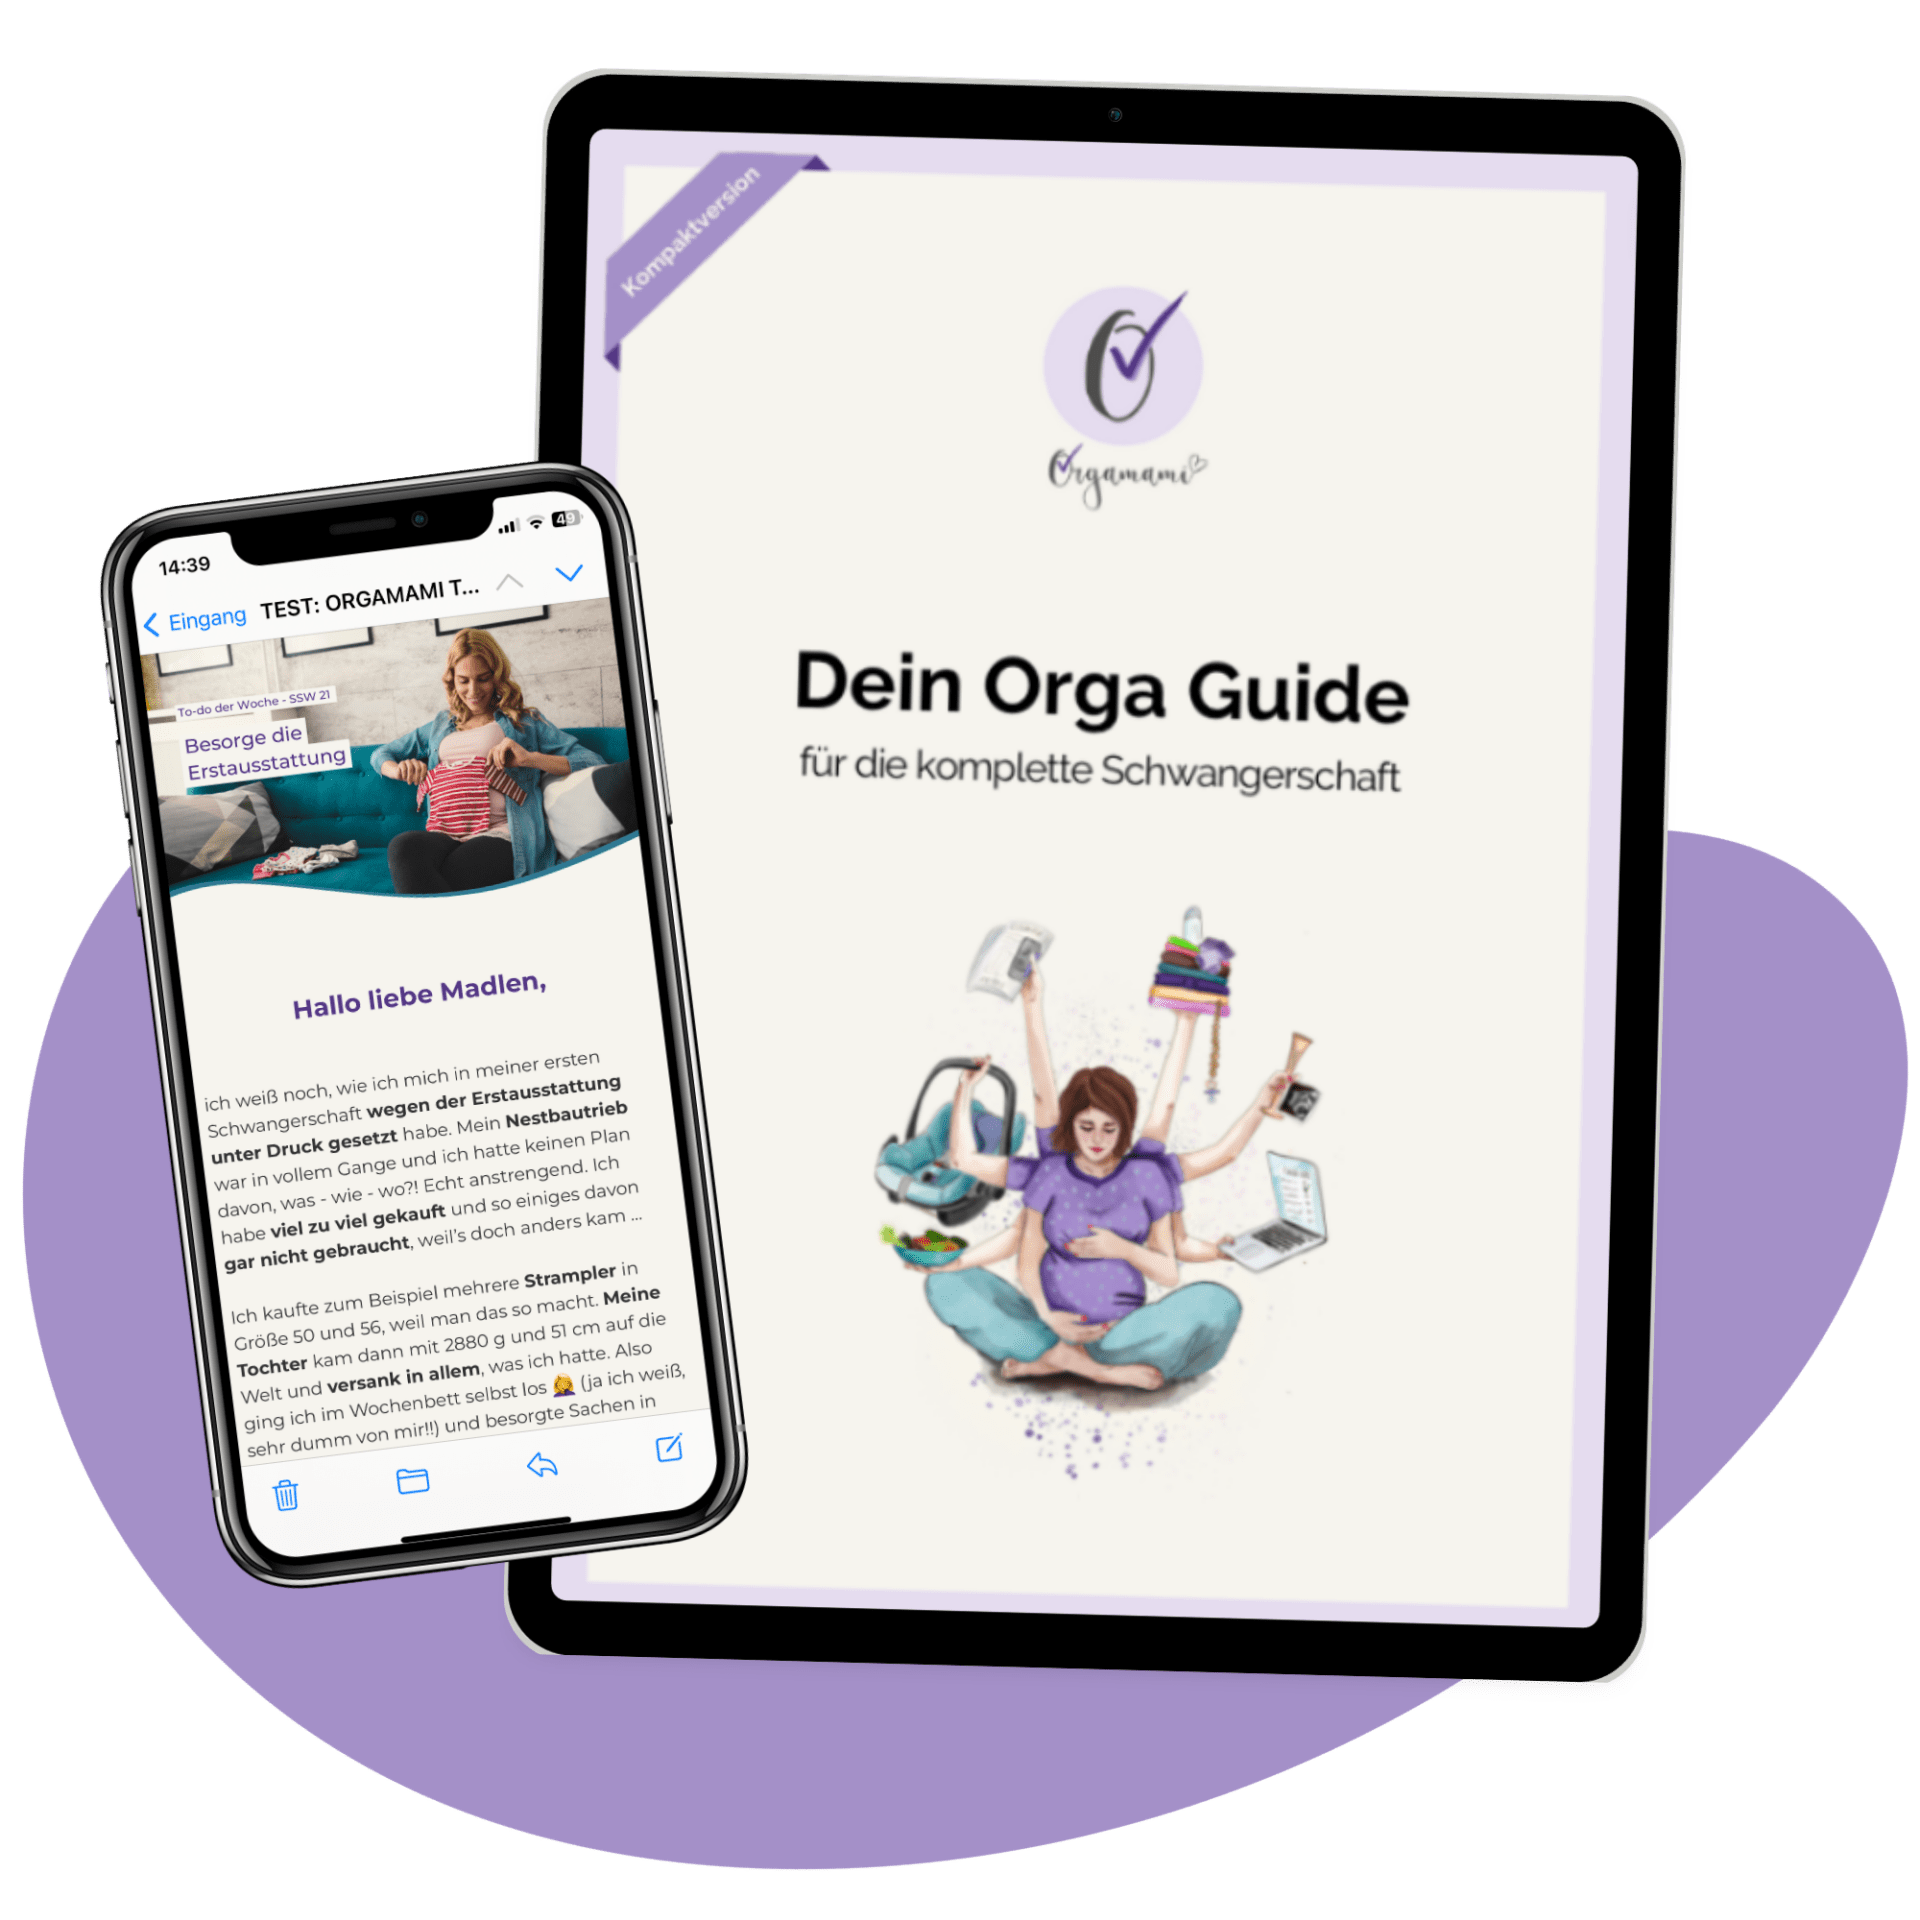 Orga Guide und Mailing